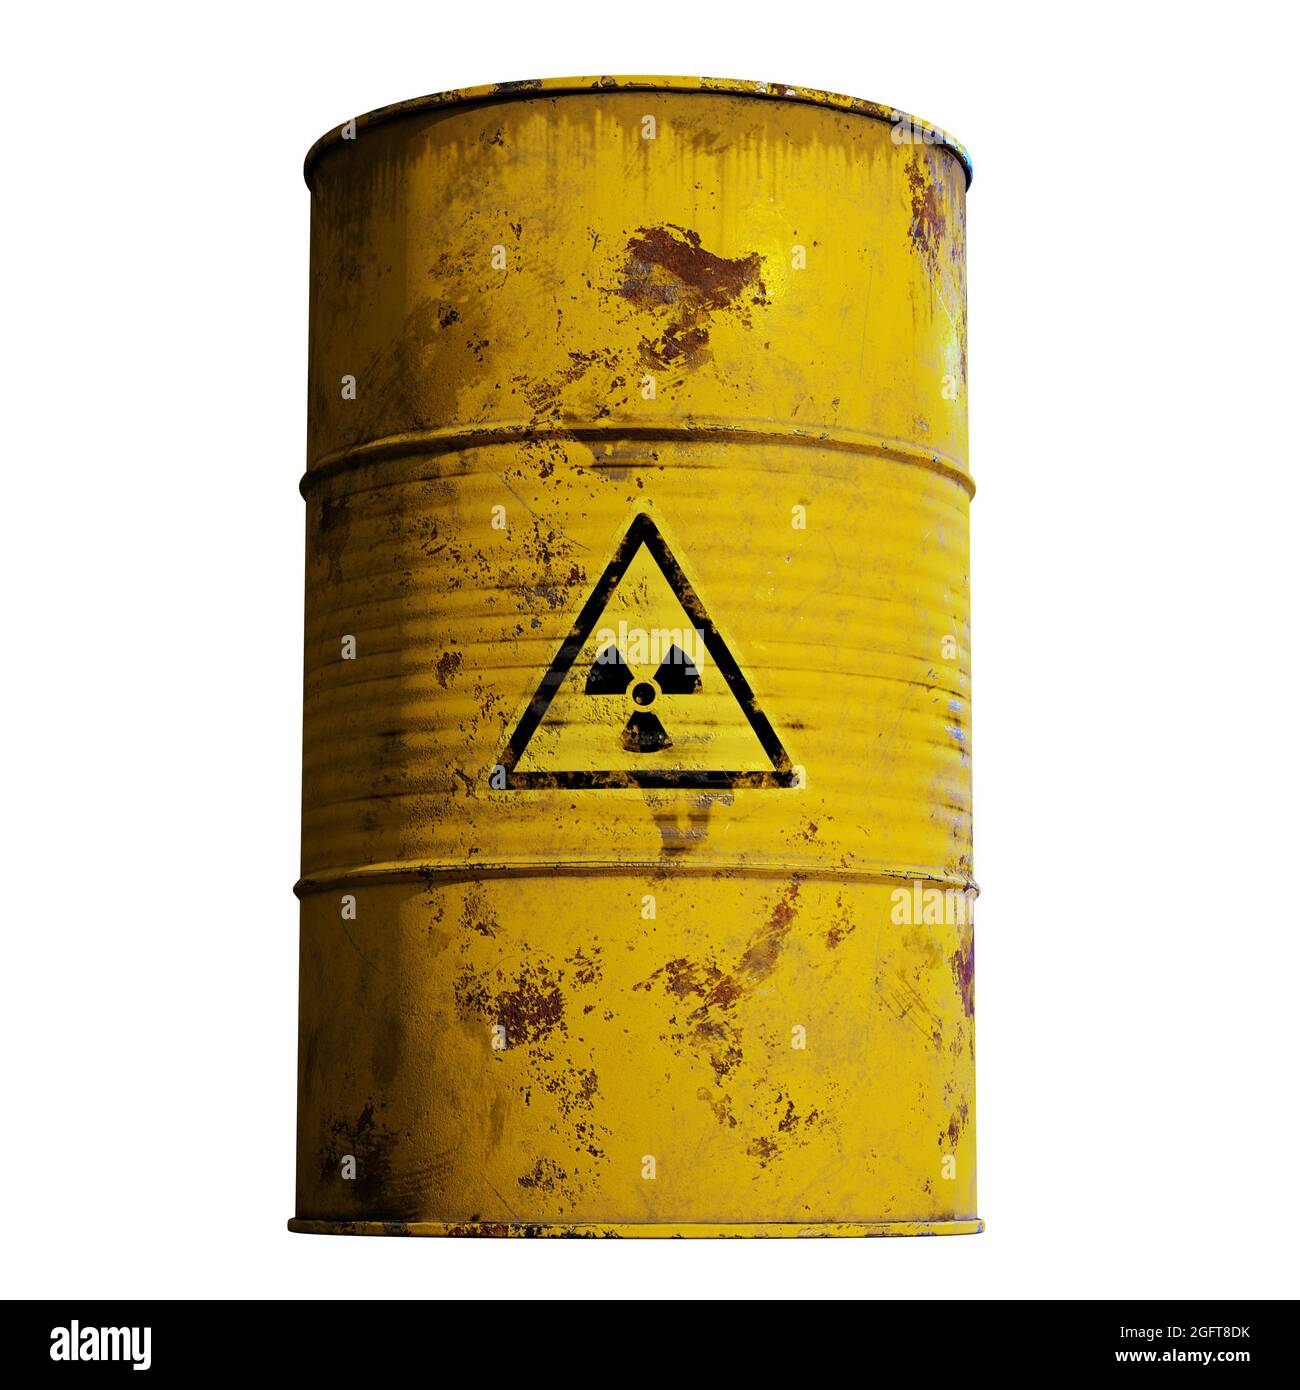 déchets radioactifs dans un baril rouillé, isolés sur fond blanc (rendu 3d) Banque D'Images